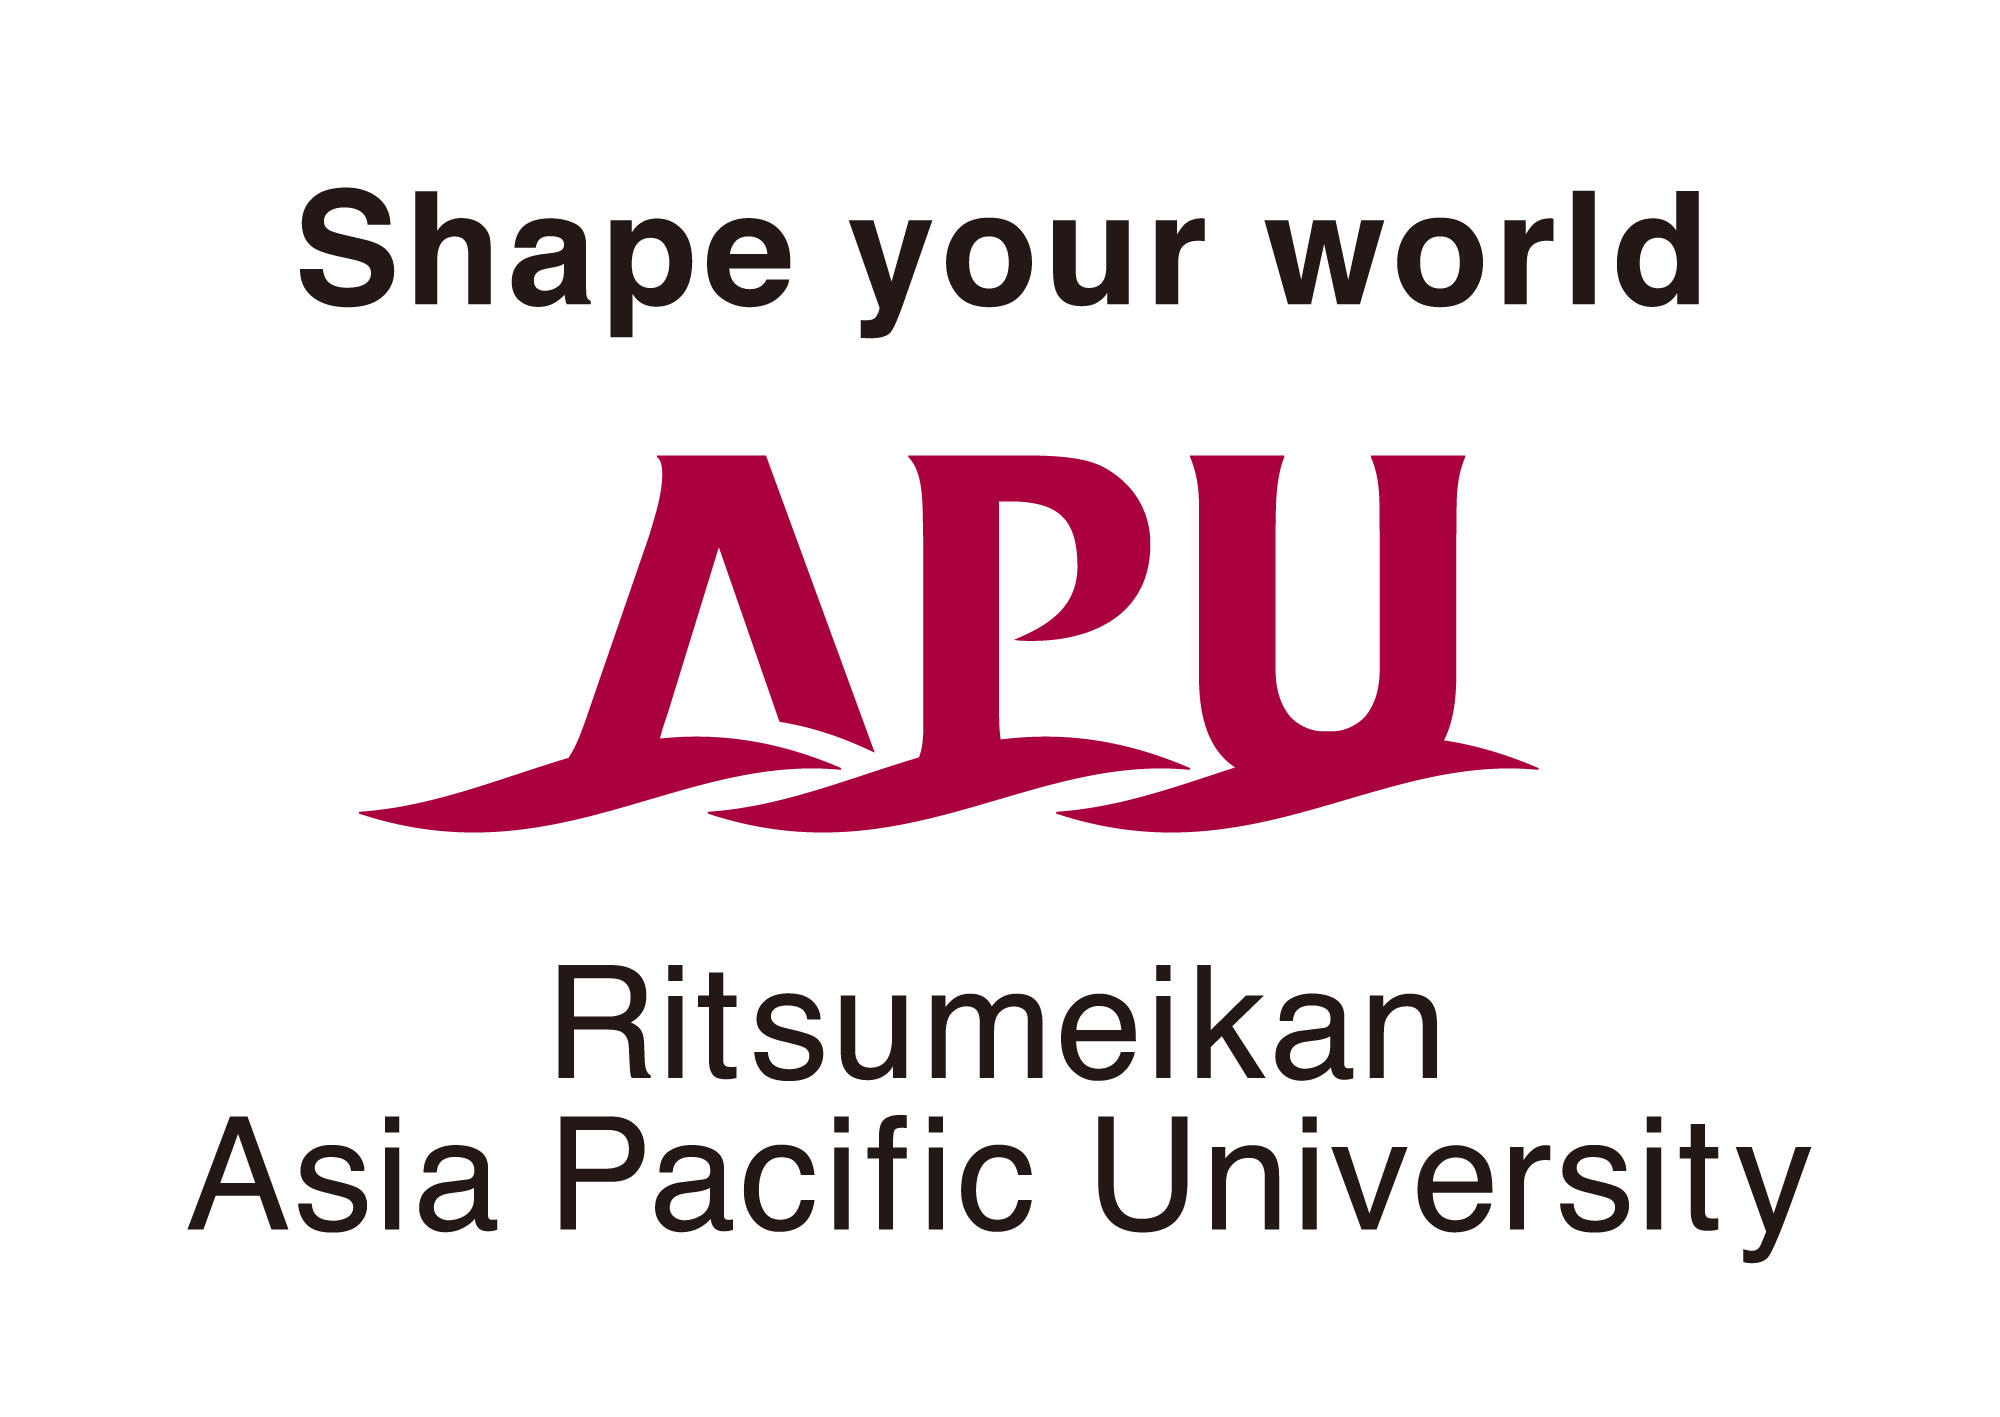 立命館アジア太平洋大学（APU）と九州大学が、連携協力協定を締結 -- 相互に連携・協力し、国際機関で活躍できる人材の育成へ